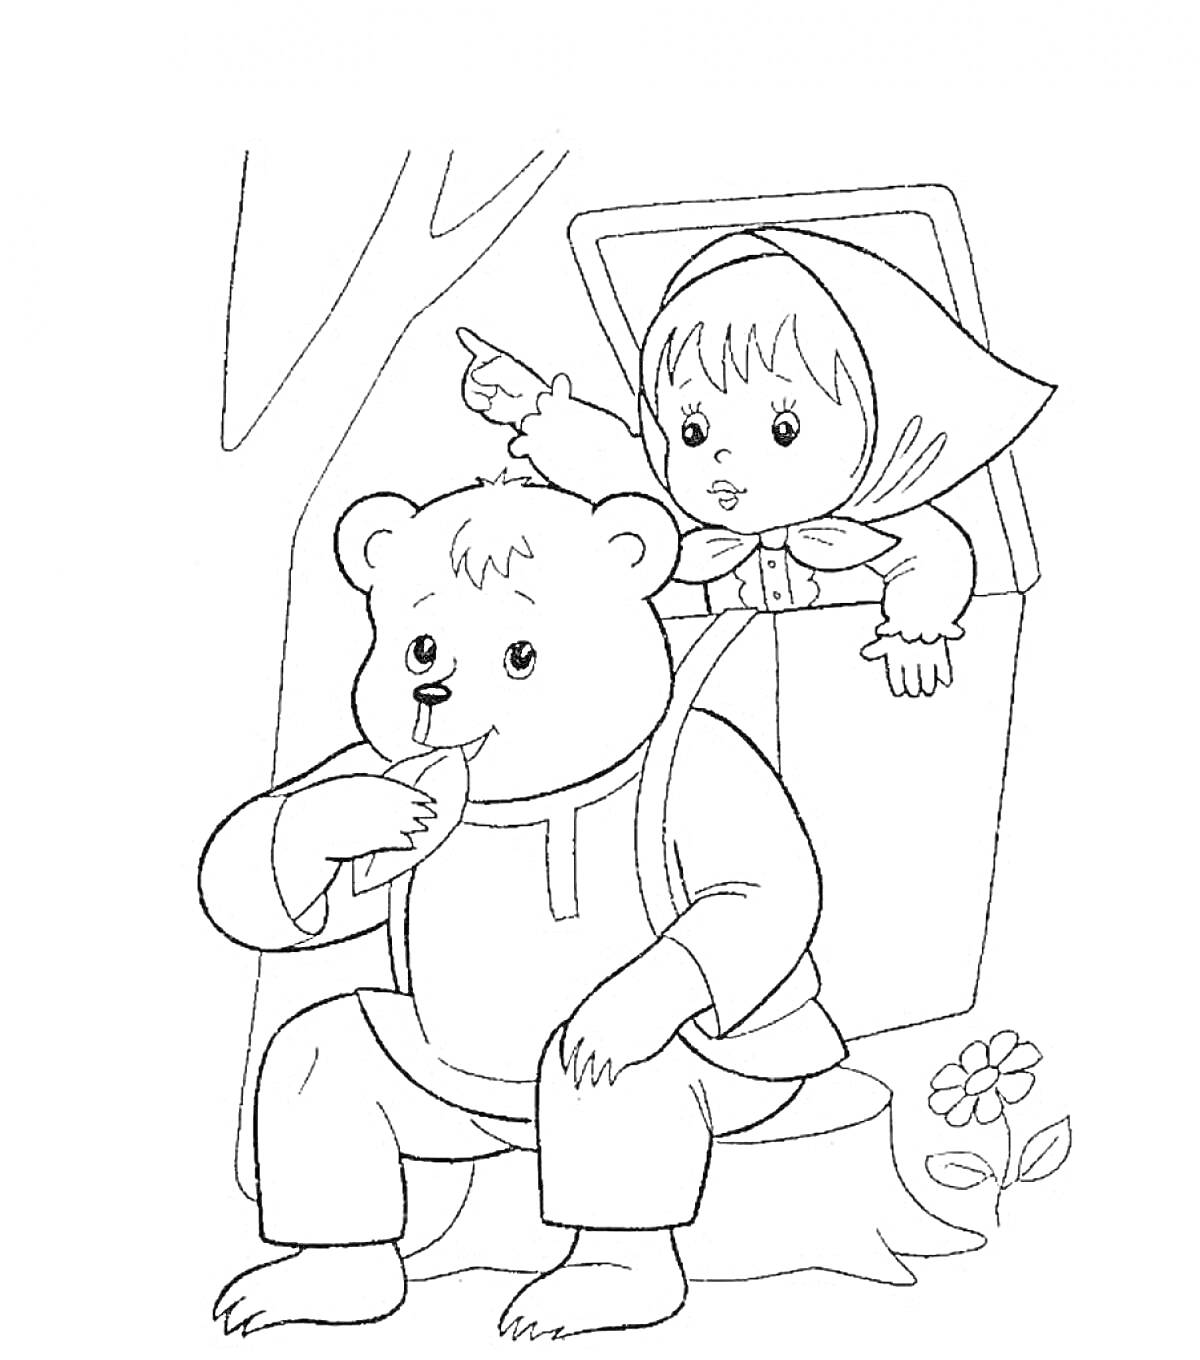 Раскраска Девочка с платком и медвежонок, сидящие рядом с окном, дерево на заднем плане, цветок внизу